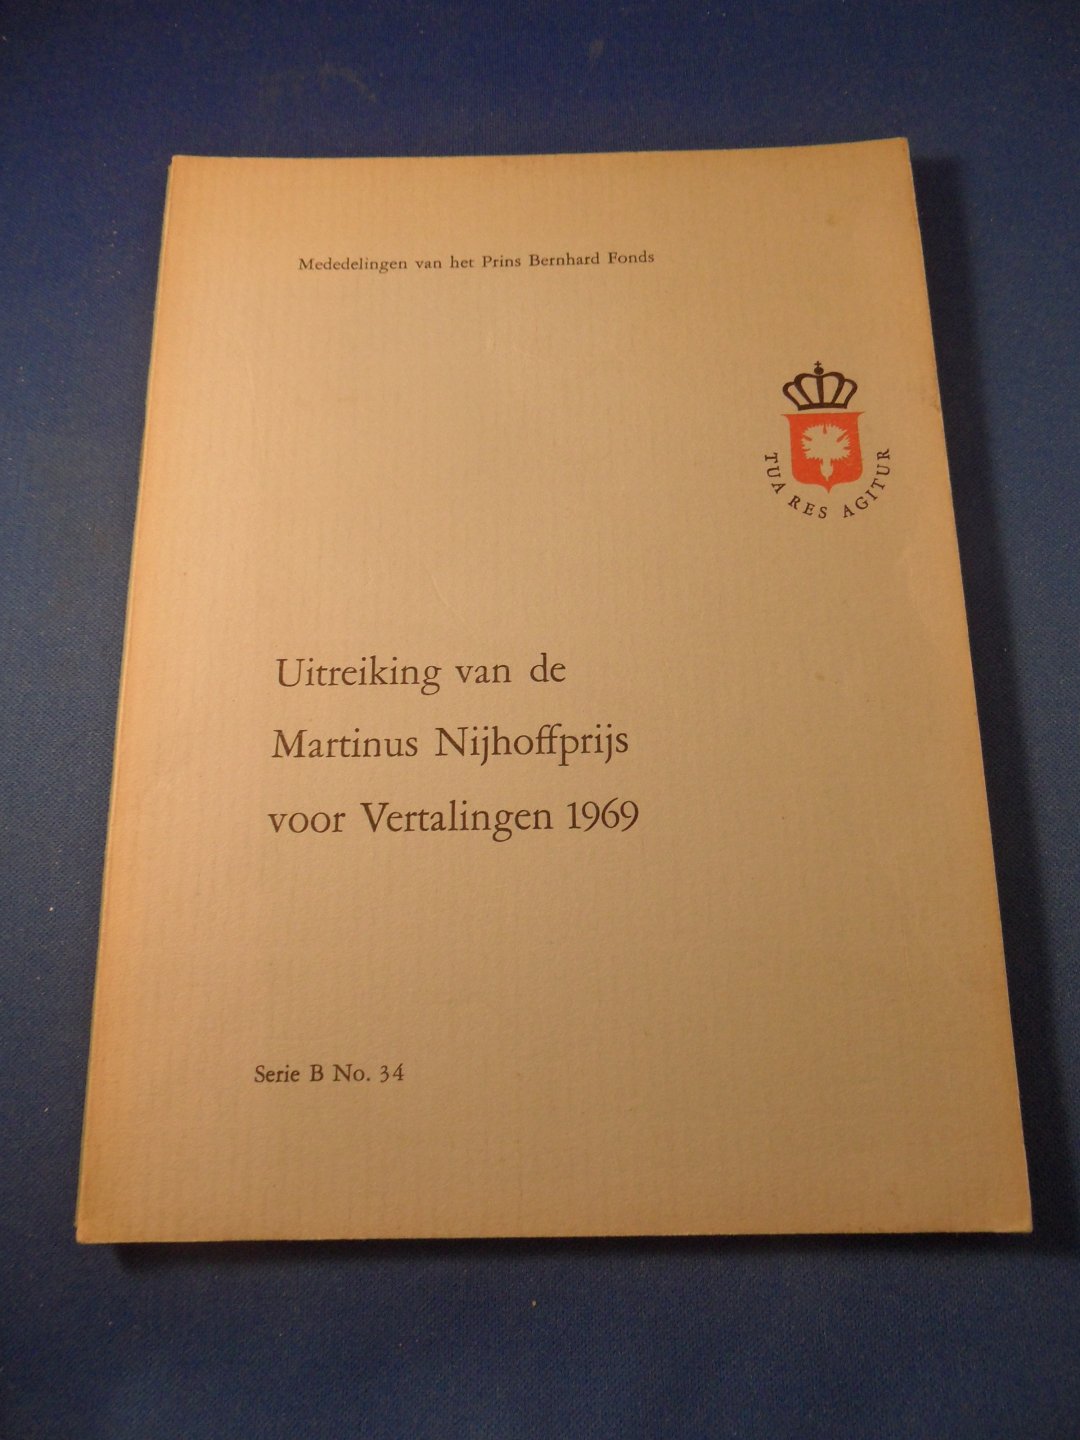  - Uitreiking Martinus Nijhoffprijs voor Vertalingen 1969 aan Olga Krijtová en Marko Fondse